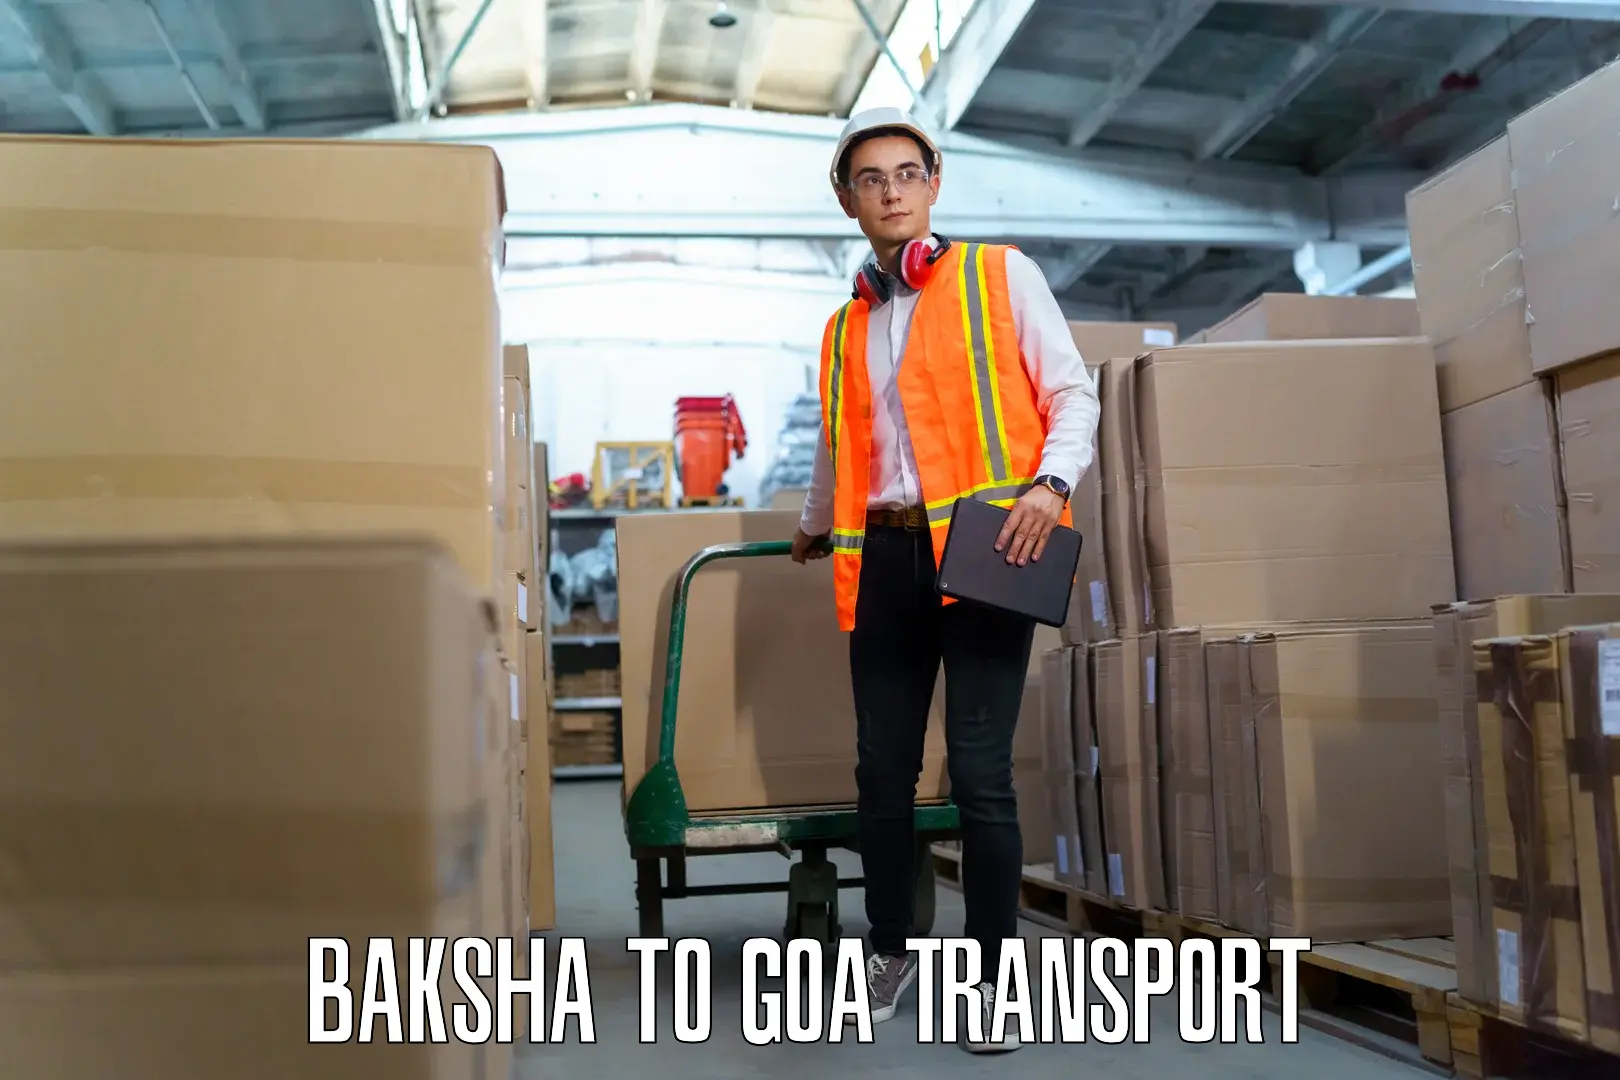 Daily transport service in Baksha to Vasco da Gama